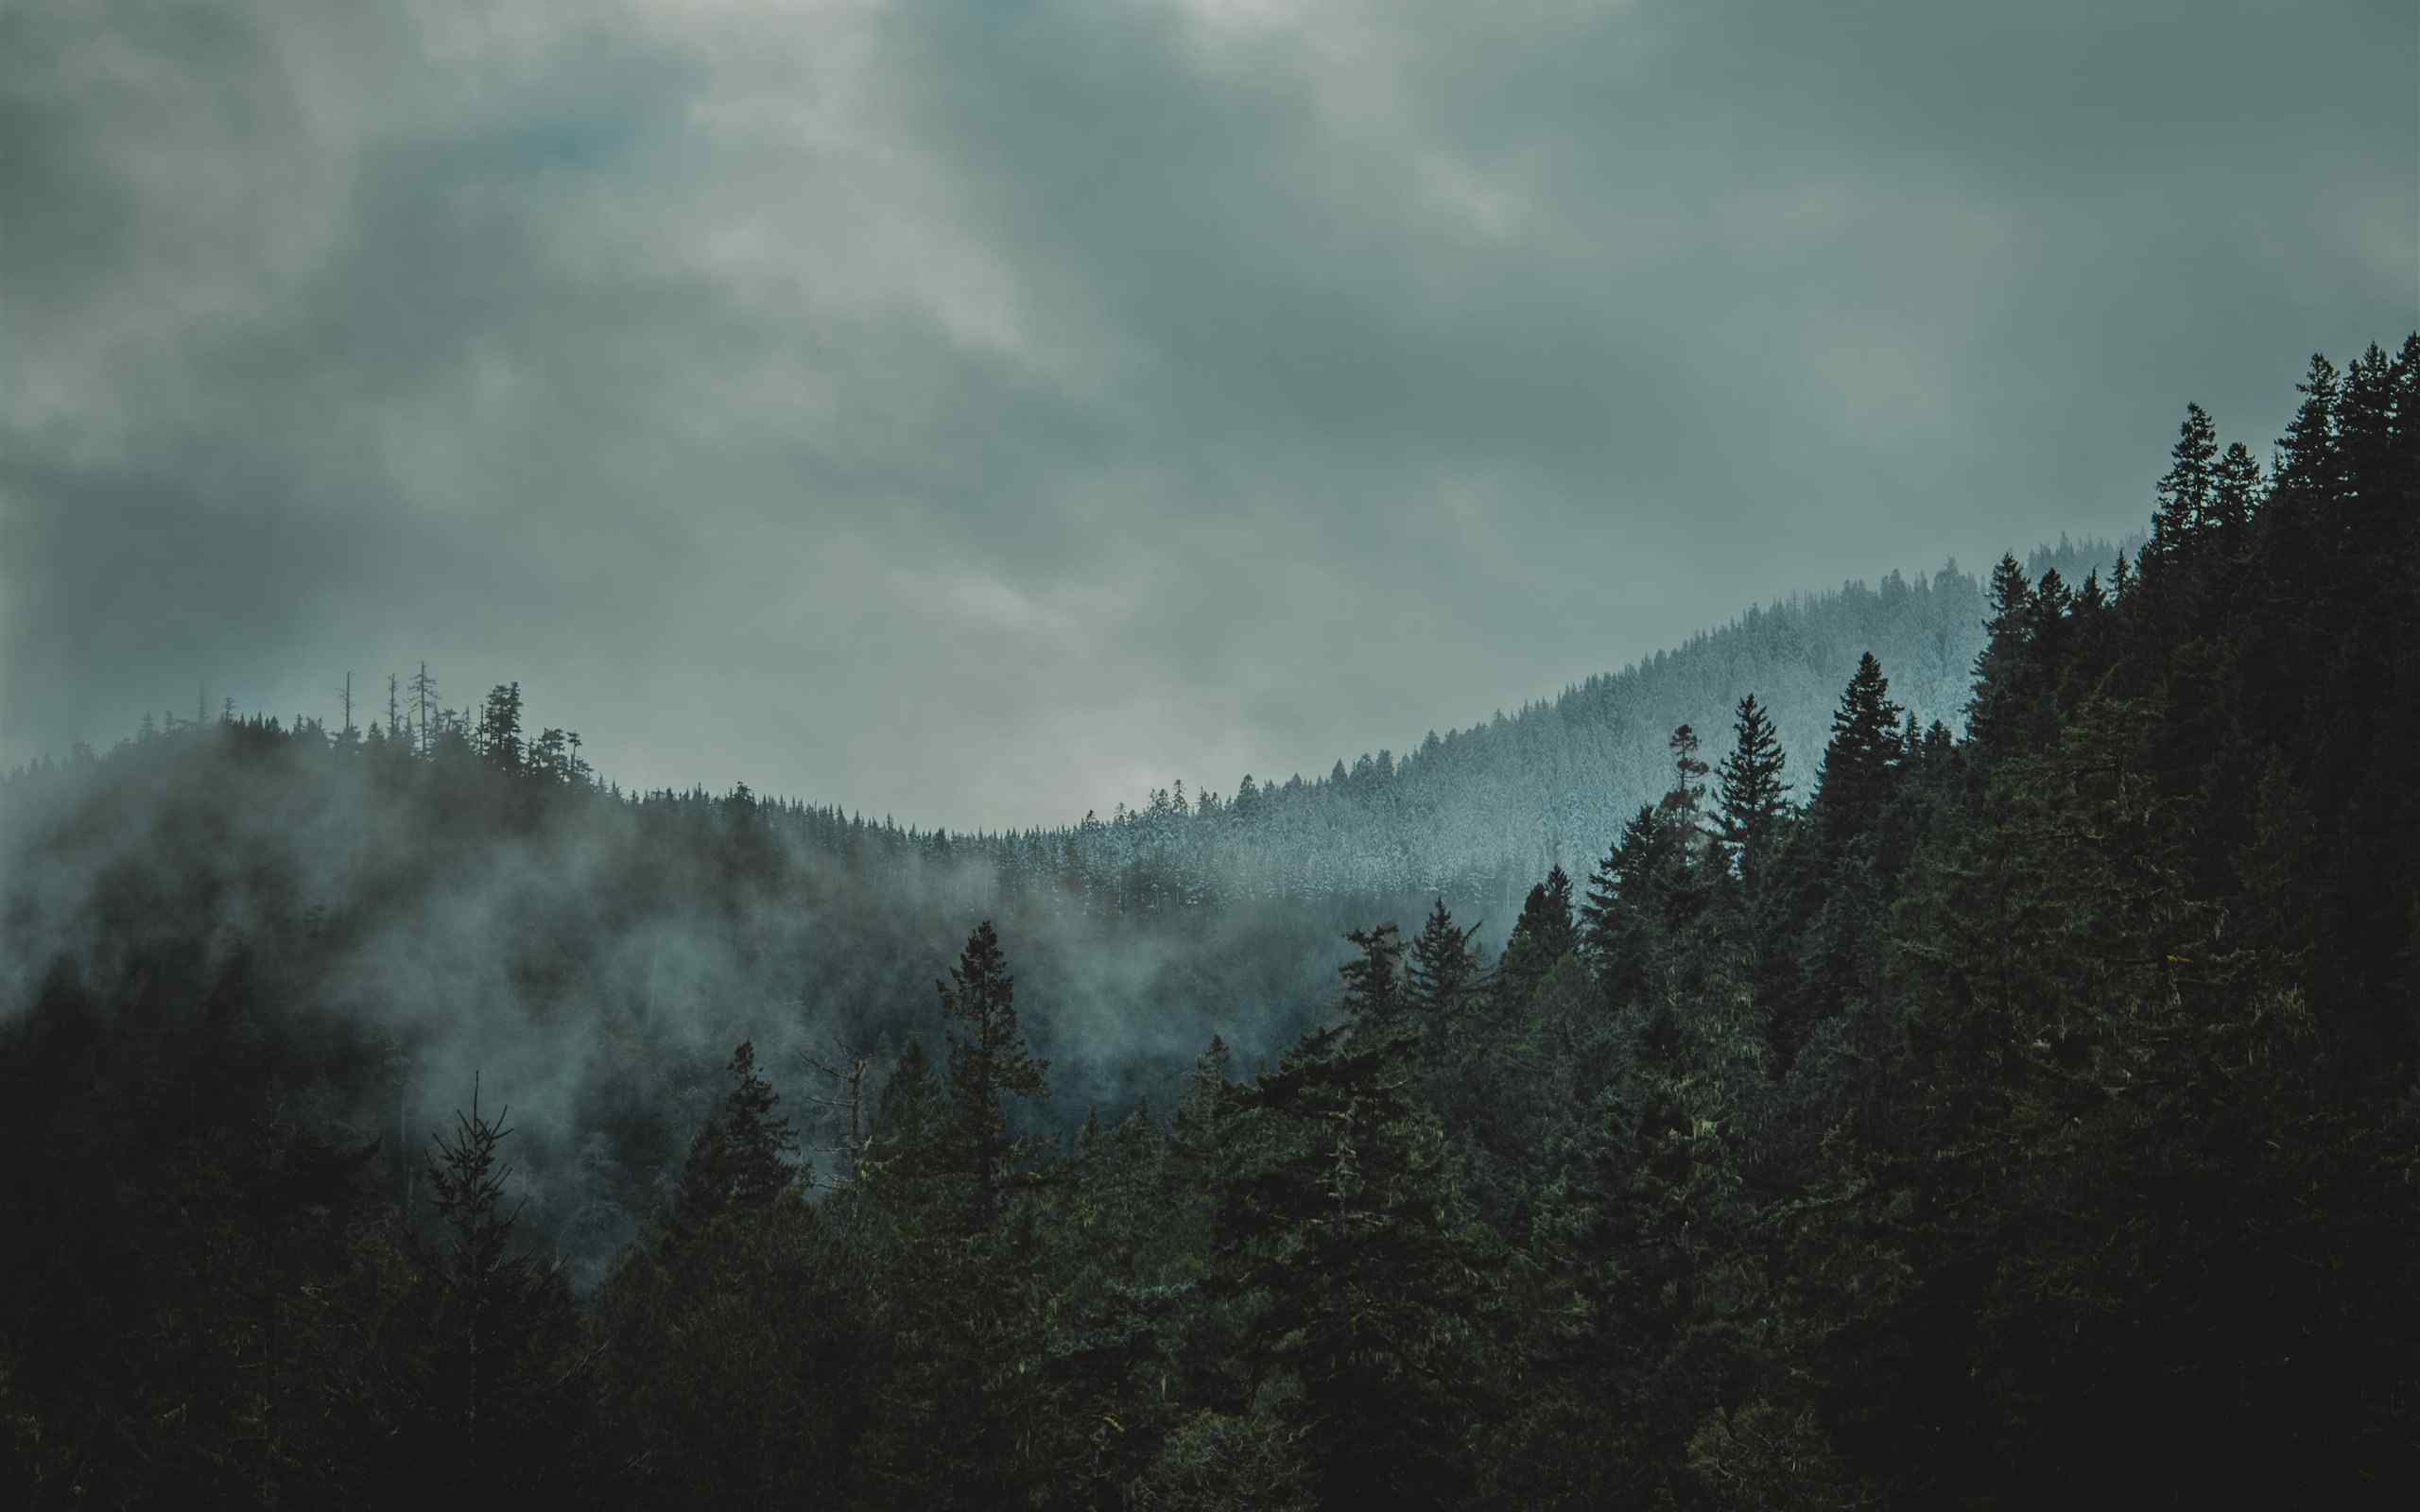 唯美意境云雾朦胧山水自然风景图片桌面壁纸